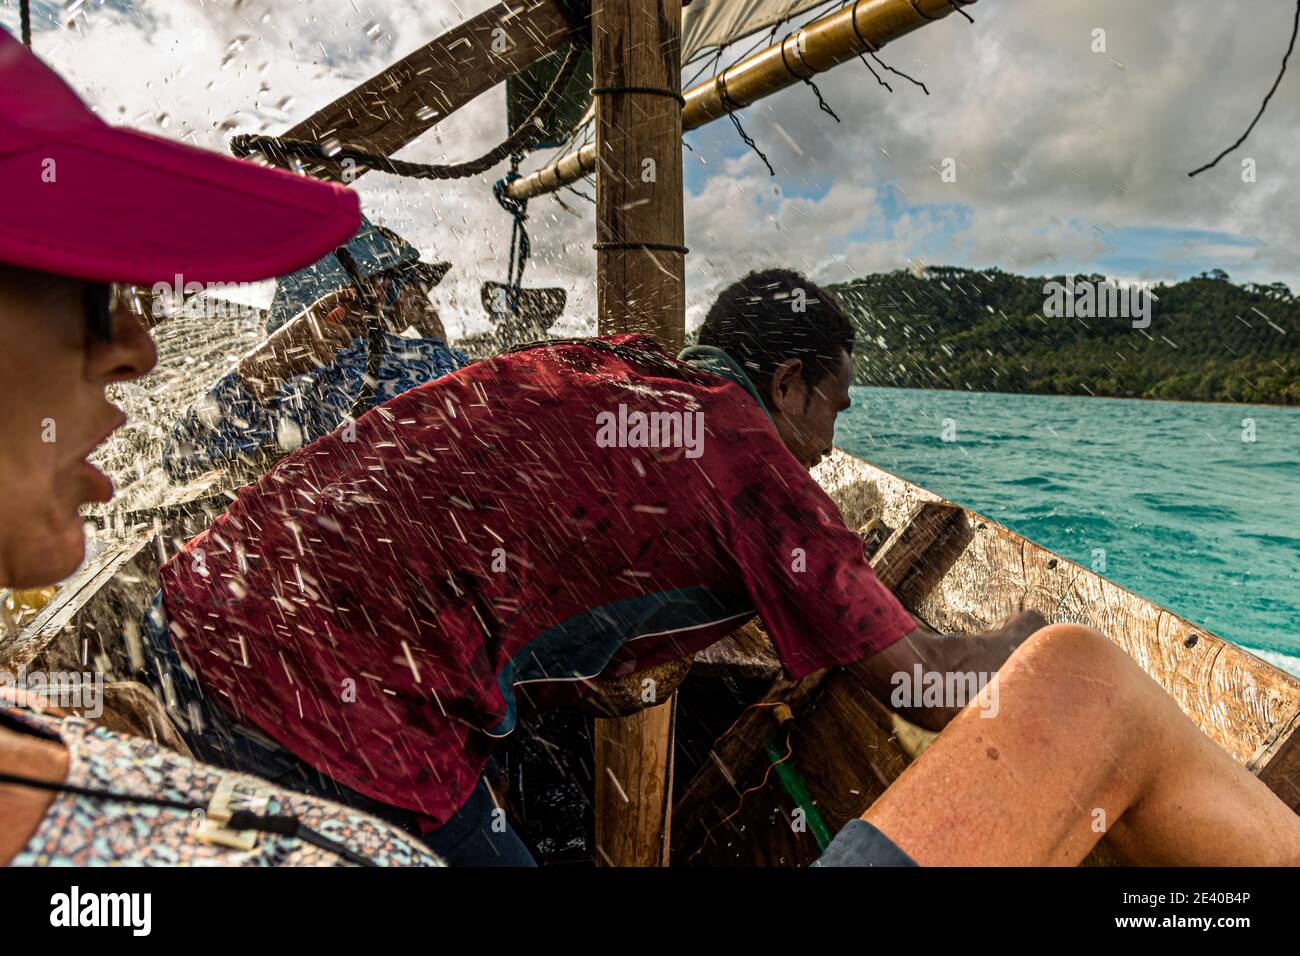 Polynesischer Stil segelt auf einem Proa (Multi-Hull Outrigger Segelboot) auf den Deboyne-Inseln, Papua-Neuguinea. Der Rumpf ist aus dünnem Hartholz gefertigt. Sie ist schmal, lang und bietet wenig Platz. Während der Fahrt wird das einspritzte Wasser kontinuierlich ausgeschöpft Stockfoto